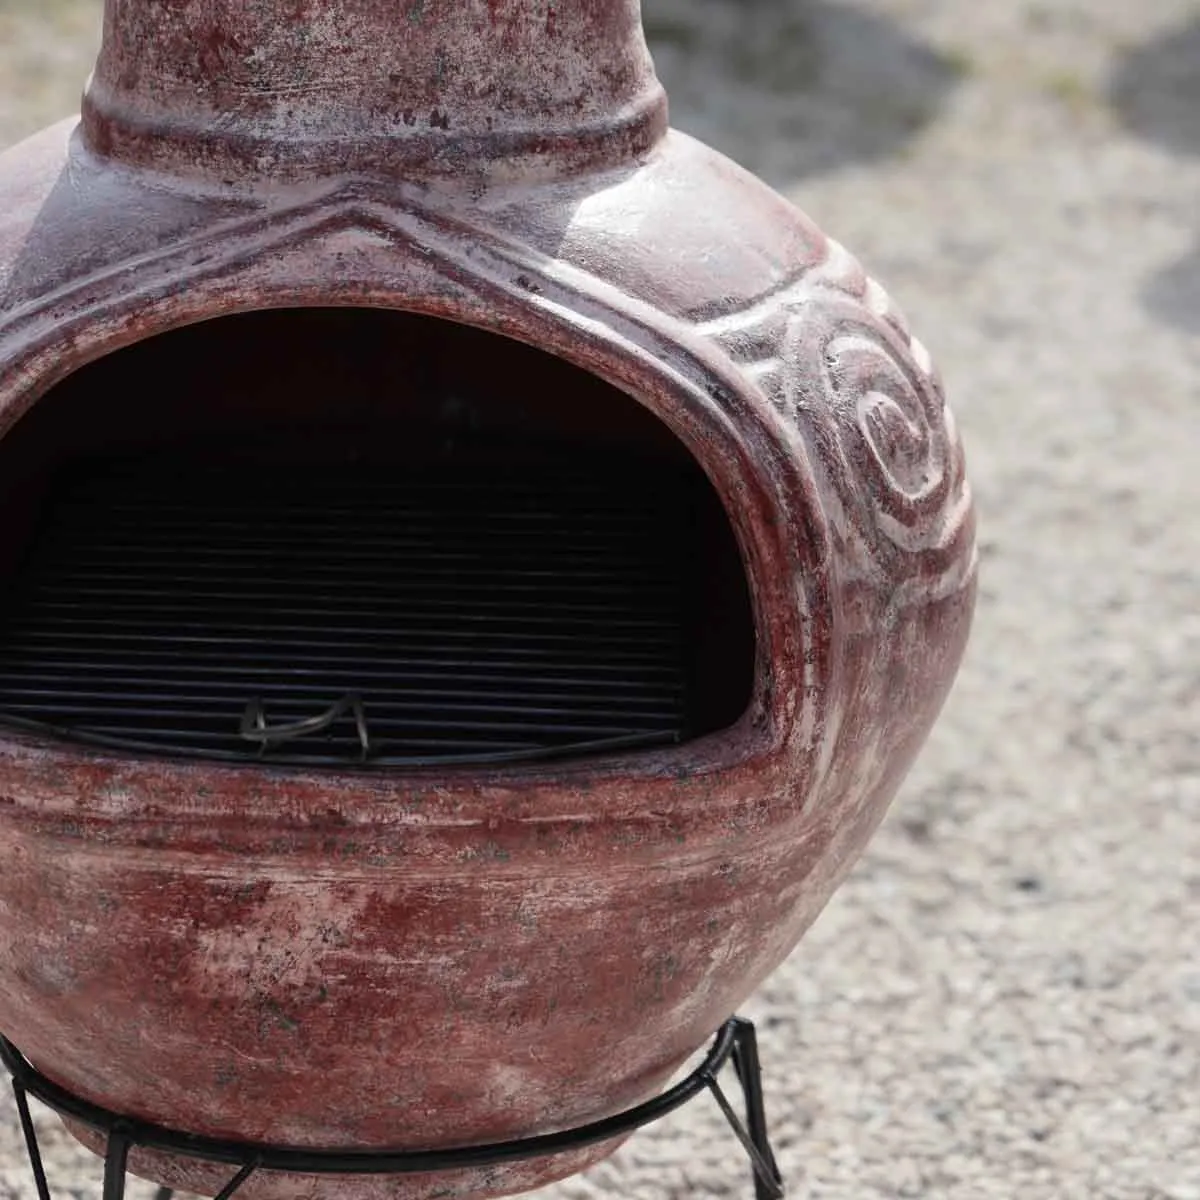 Le brasero barbecue mexicain authentique, dans votre jardin- Amadera Taille  40 KG - 125 cm sur trépied (100 cm le brasero seul) x 55 cm de diamètre